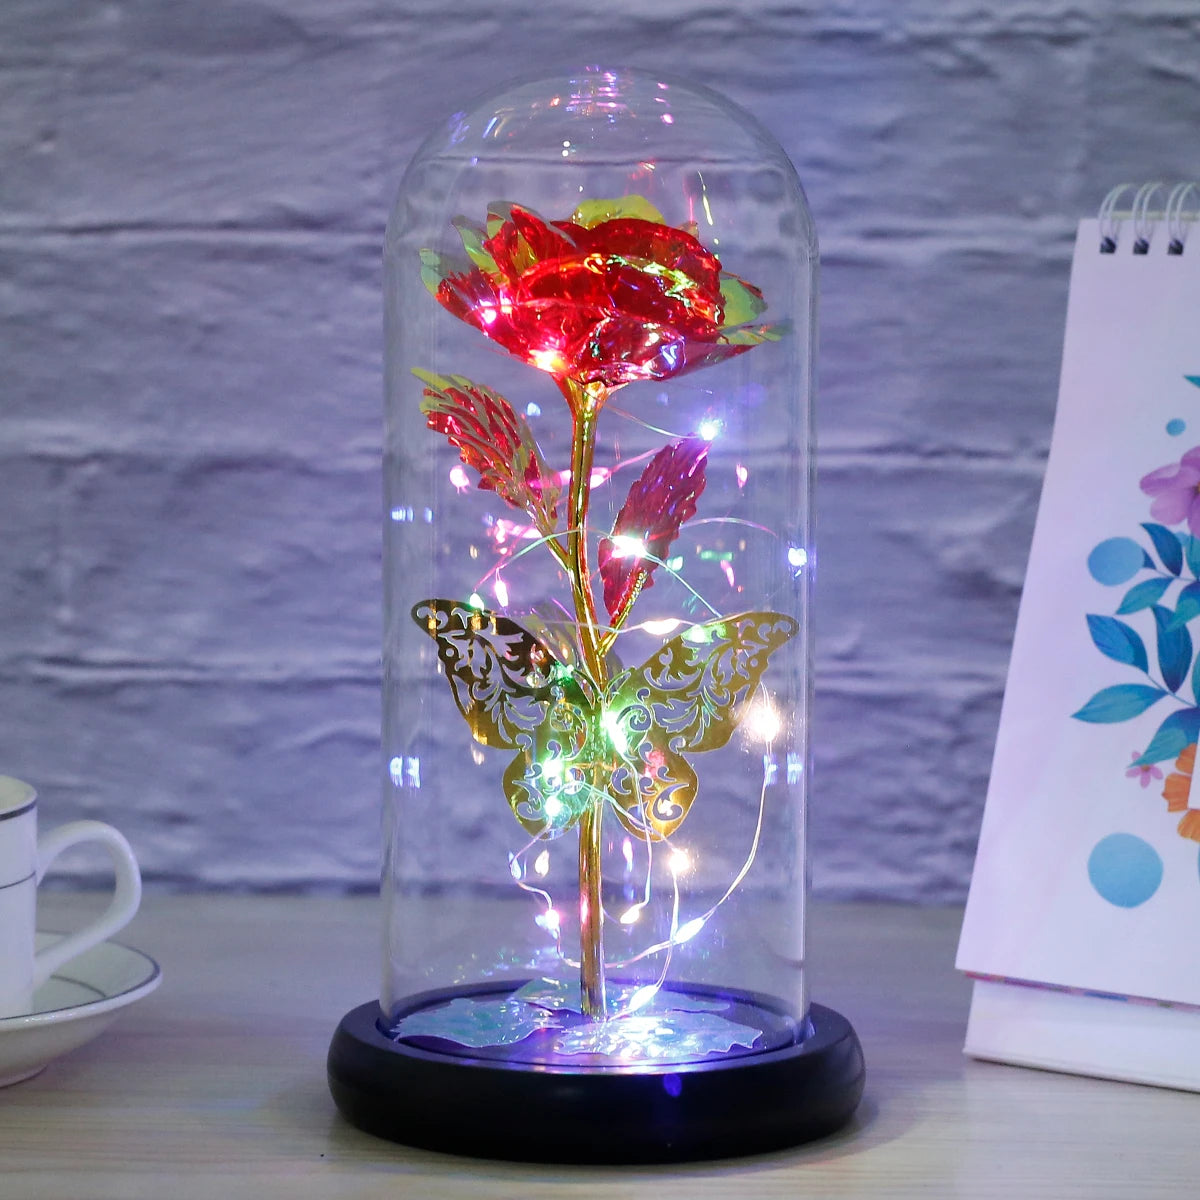 Rose światło sztuczna lampa róży galaktyki z motylem i kolorowymi kwiatami róży LED w szklanej baterii Prezenty dla kobiet